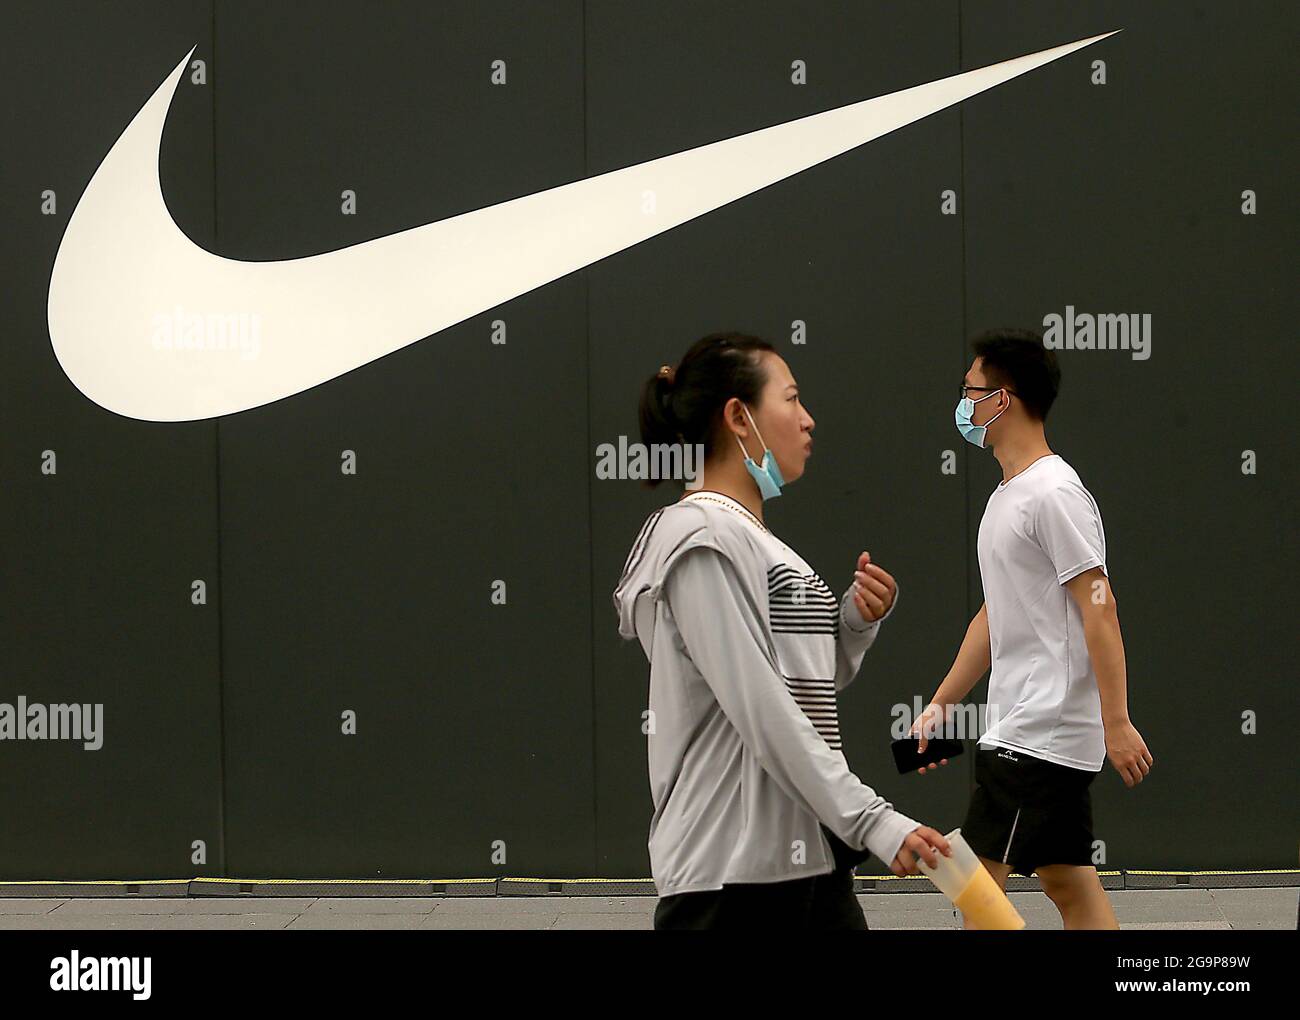 Pekín, China. 27th de julio de 2021. El martes 27 de julio de 2021, China  pasará por una nueva sala de exposición de Nike en el centro de Beijing.  Una empresa china